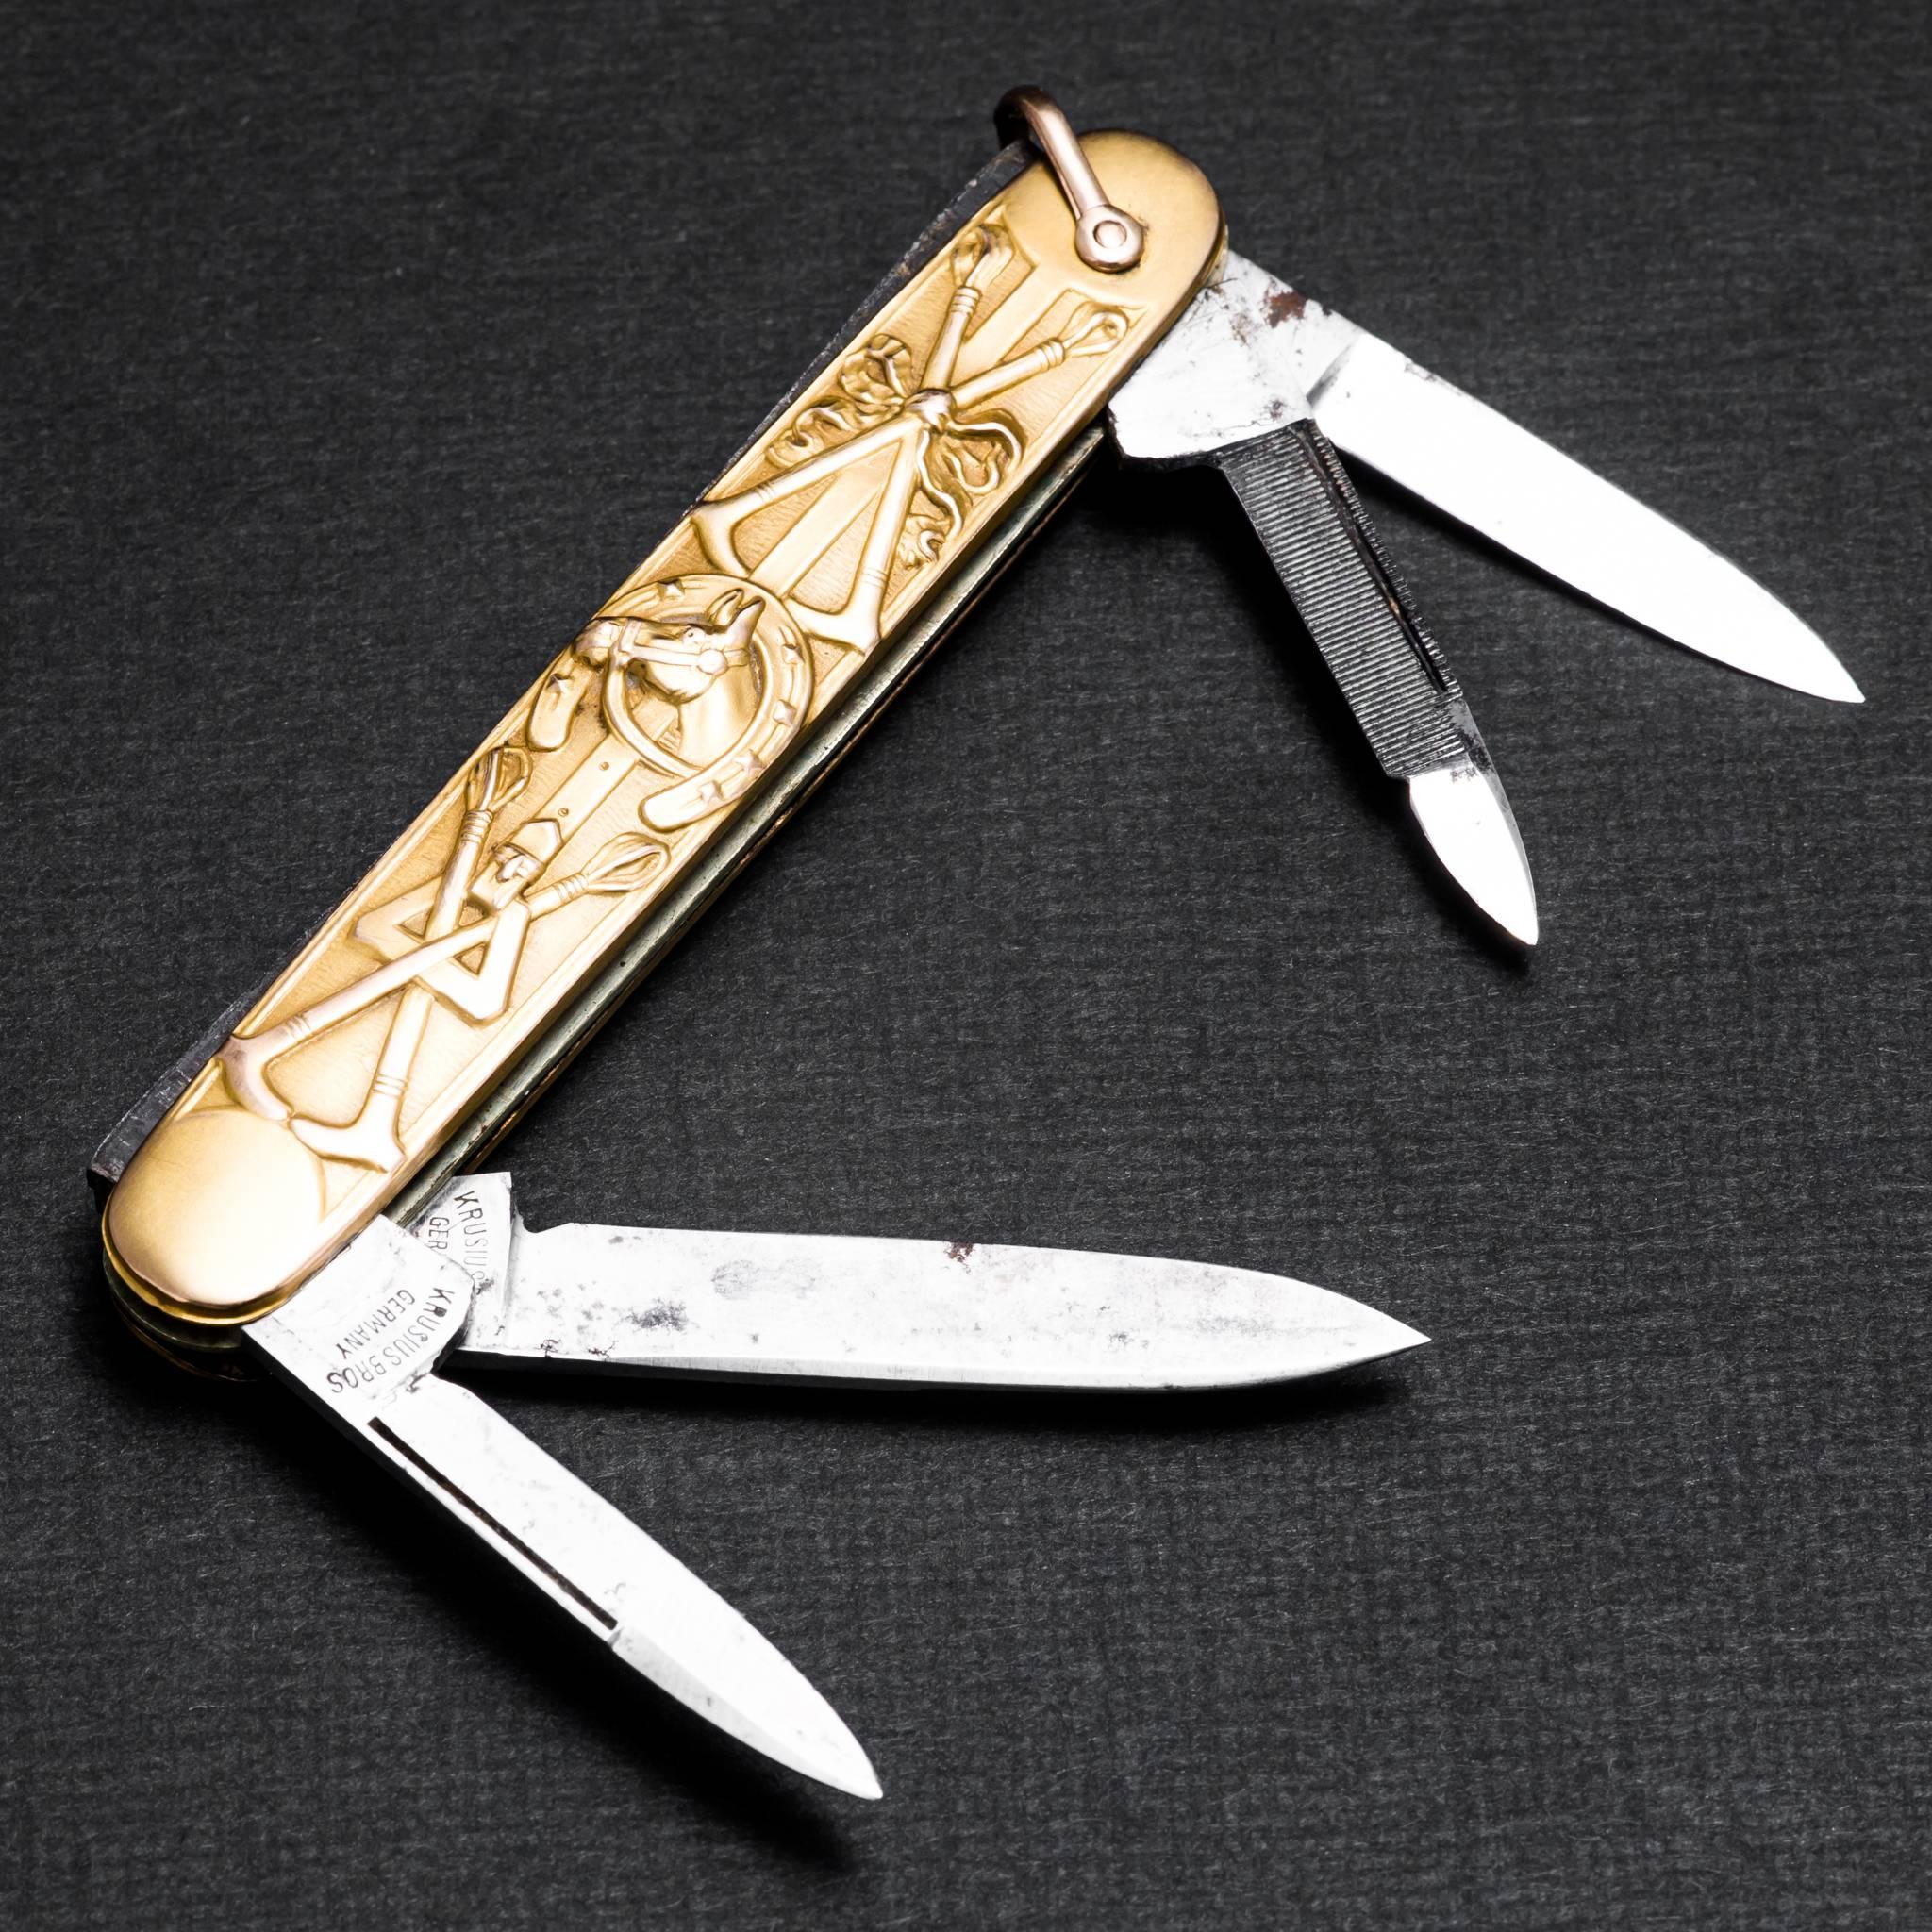 antique gold pocket knife